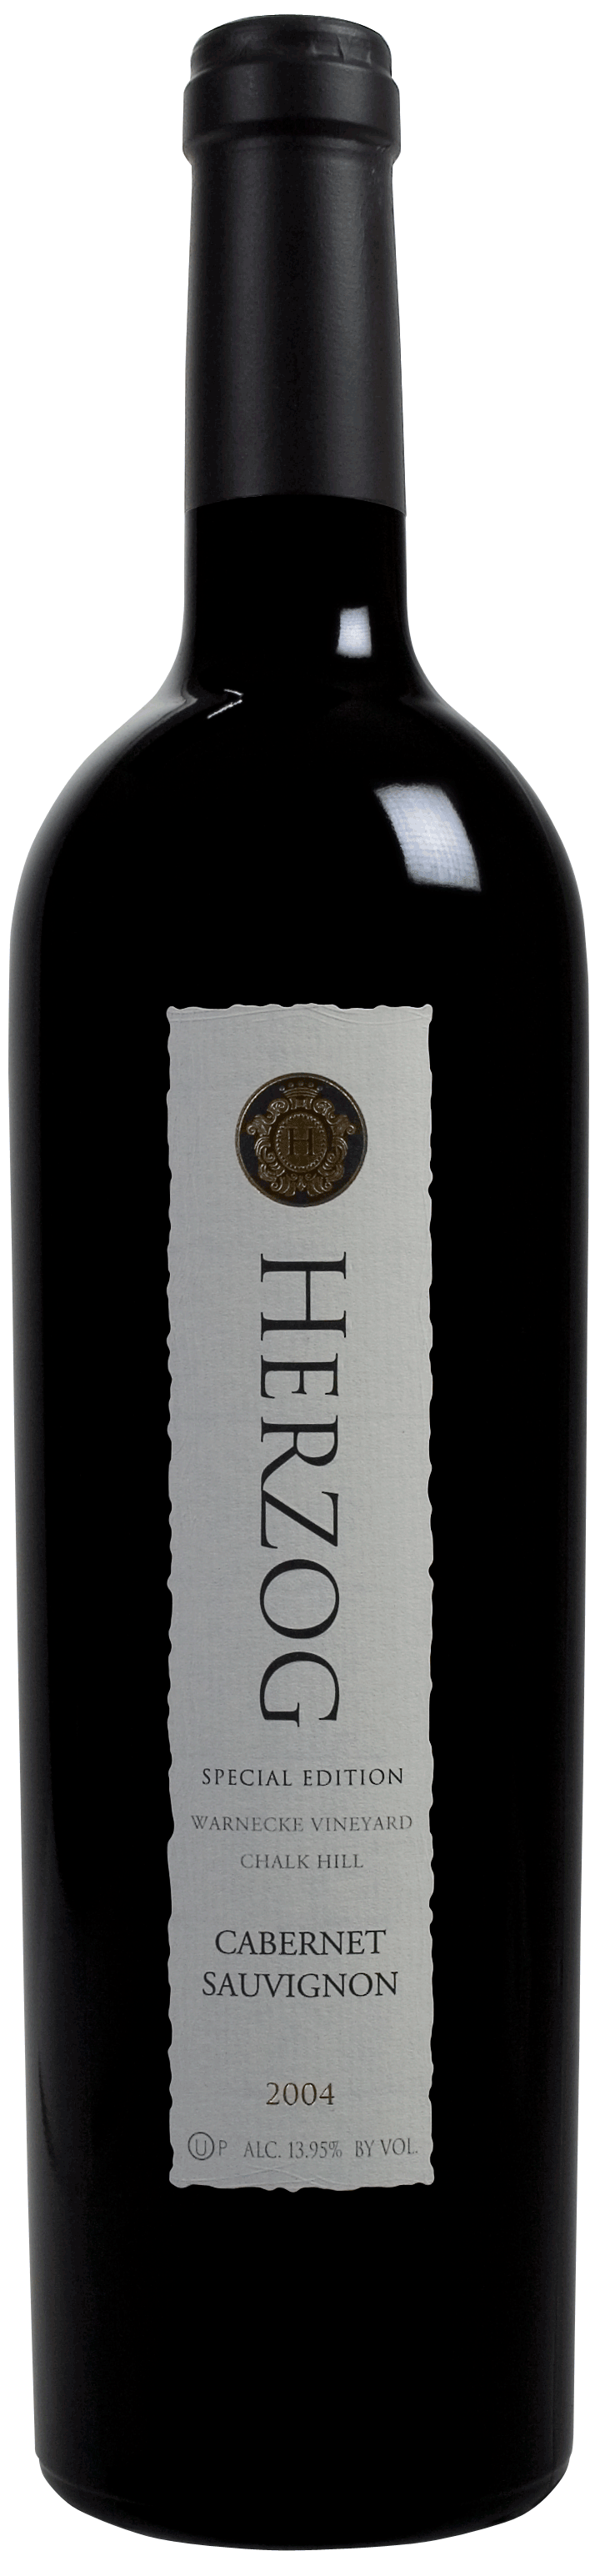 Herzog Special Edition Cabernet